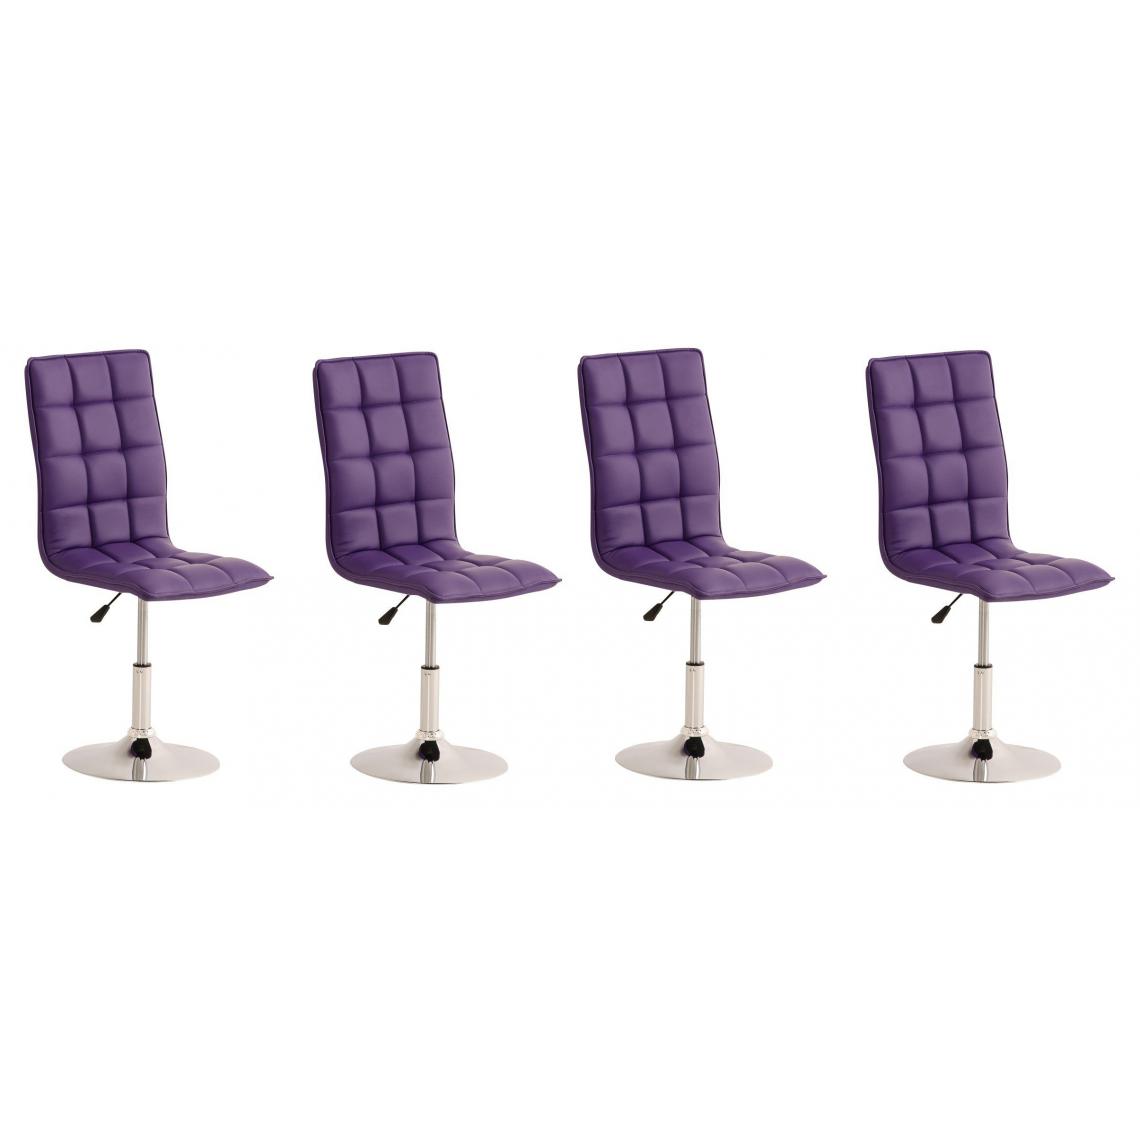 Decoshop26 - Lot de 4 chaises de salle à manger hauteur réglable en simili-cuir violet CDS10129 - Chaises